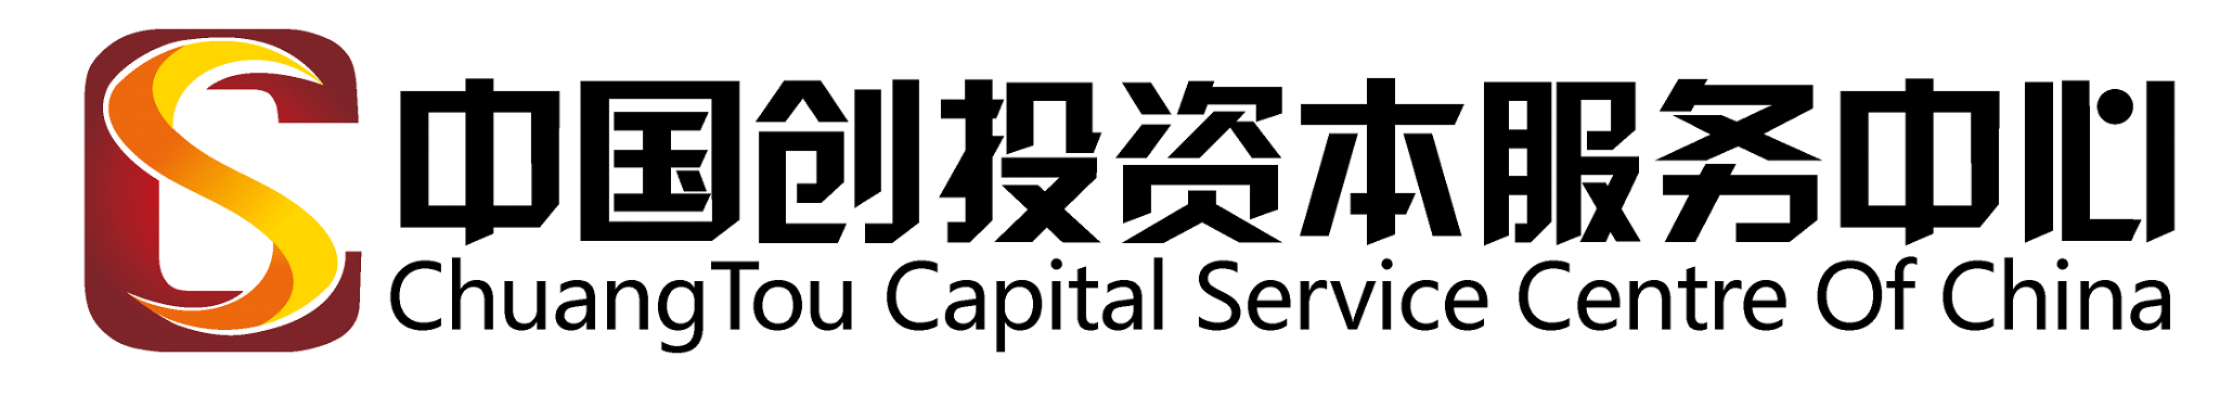 資本中國·企業資本對接與融資掛牌項目扶持基地